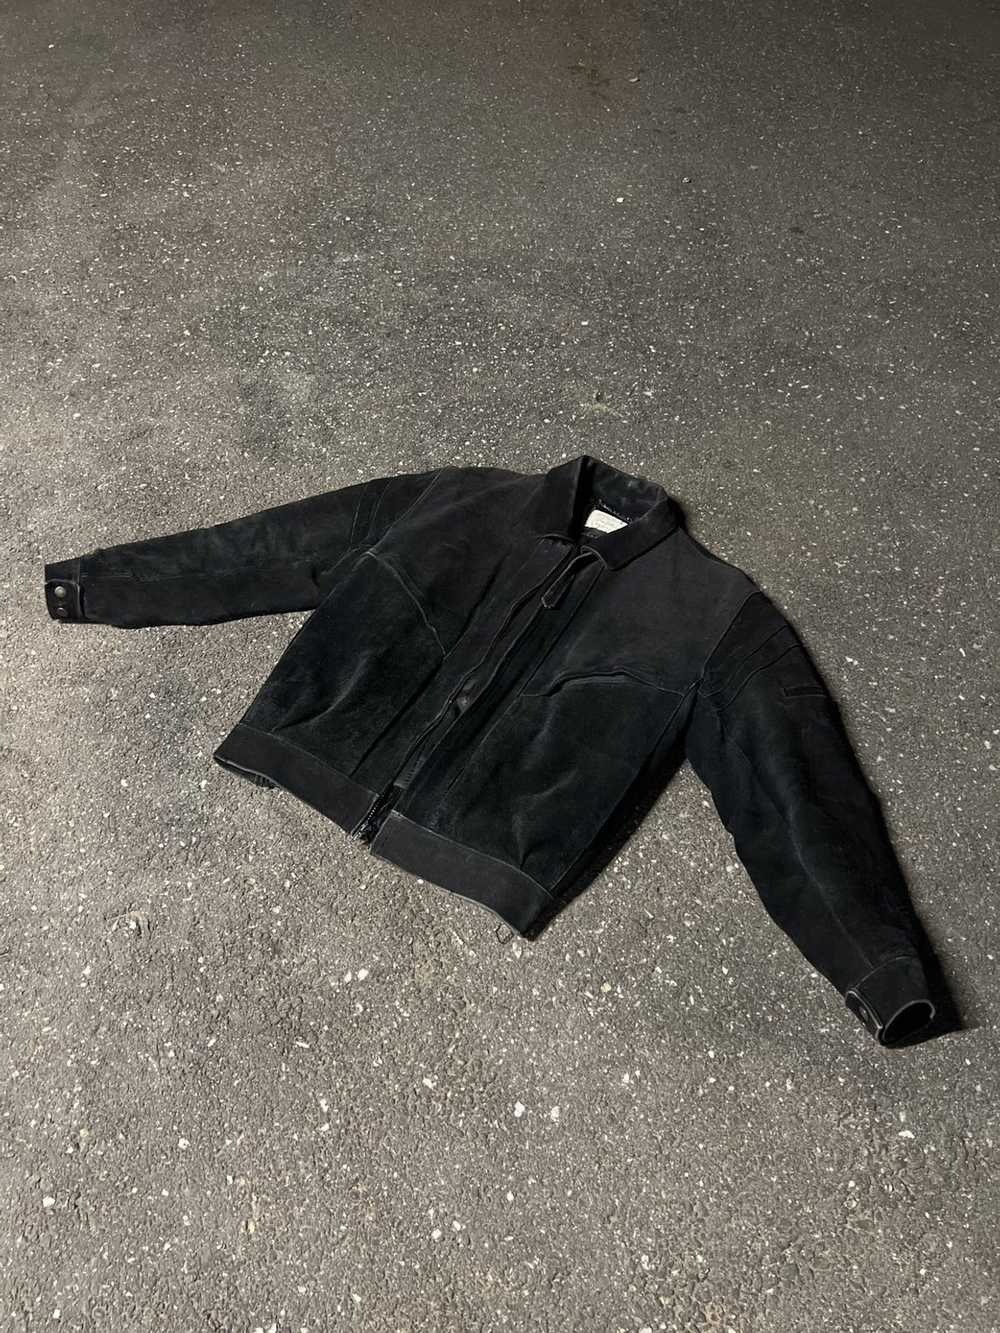 Branded Leather × Leather Jacket × Vintage Vintag… - image 1